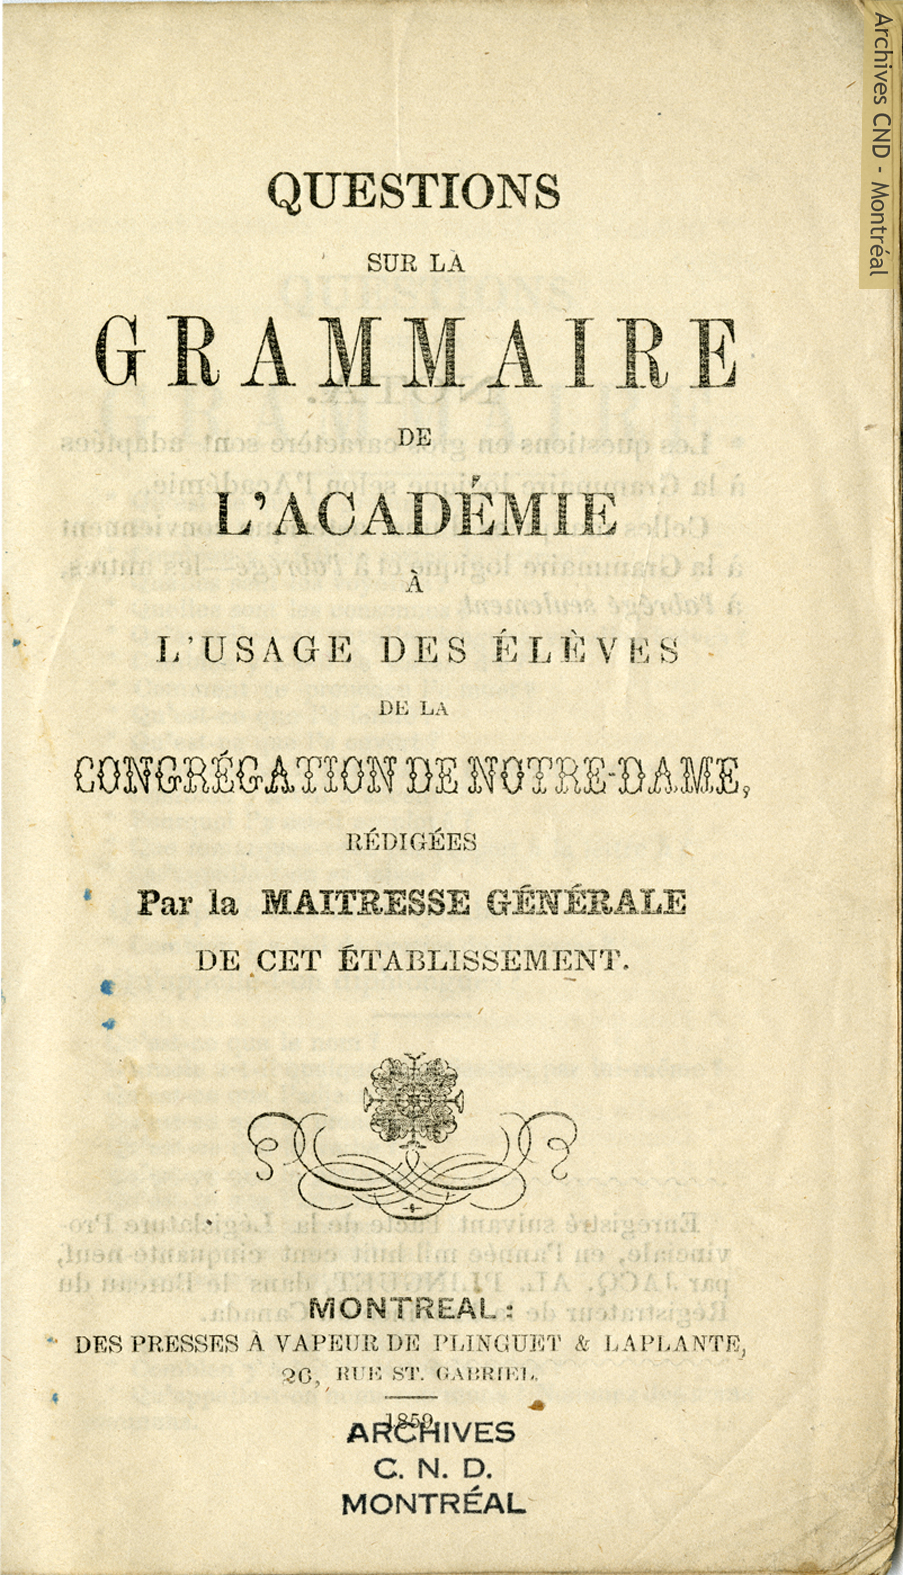 Cover page - Questions sur la grammaire à l'Académie à l'usage des élèves de la Congrégation de Notre-Dame